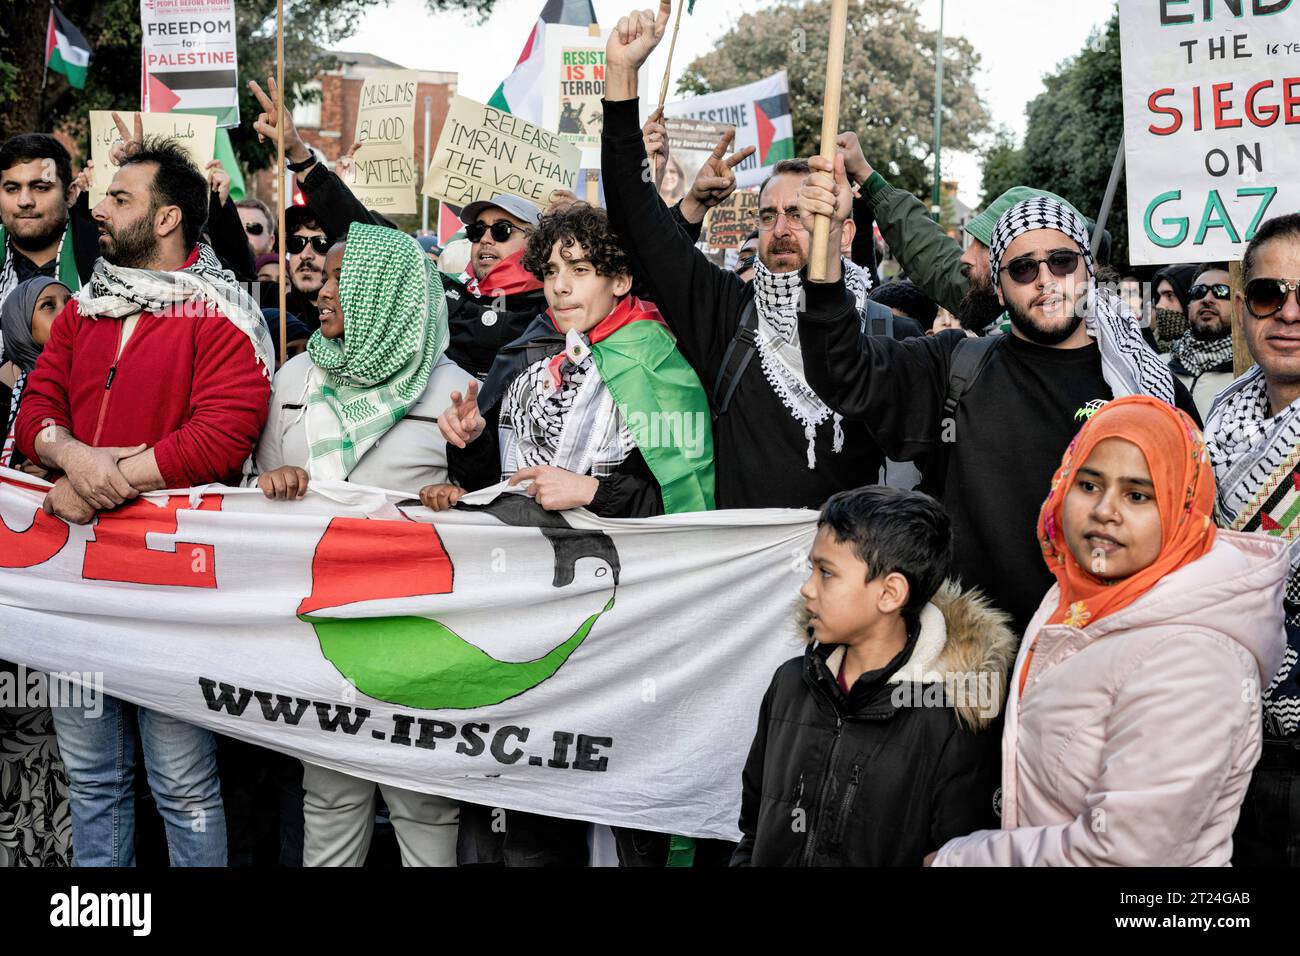 Mitglieder der palästinensischen und arabischen Gemeinschaft Irlands sowie Unterstützer und Aktivisten versammeln sich während der Demonstration mit Plakaten und einem Banner vor der israelischen Botschaft. Am Samstag, dem 14. Oktober, fand in Dublin ein dritter Tag der Proteste statt, der Solidarität mit dem palästinensischen Volk diente. Tausende von Menschen marschierten von der O'Connell Street durch die Stadt zur israelischen Botschaft, wo Sprecher der palästinensischen und syrischen Gemeinschaft über ihre Erfahrungen und aktuelle Nachrichten von Familienmitgliedern und Freunden in Gaza sowie von Mitgliedern der I.P.S.C. (Irland Palästina Solidar) berichteten Stockfoto